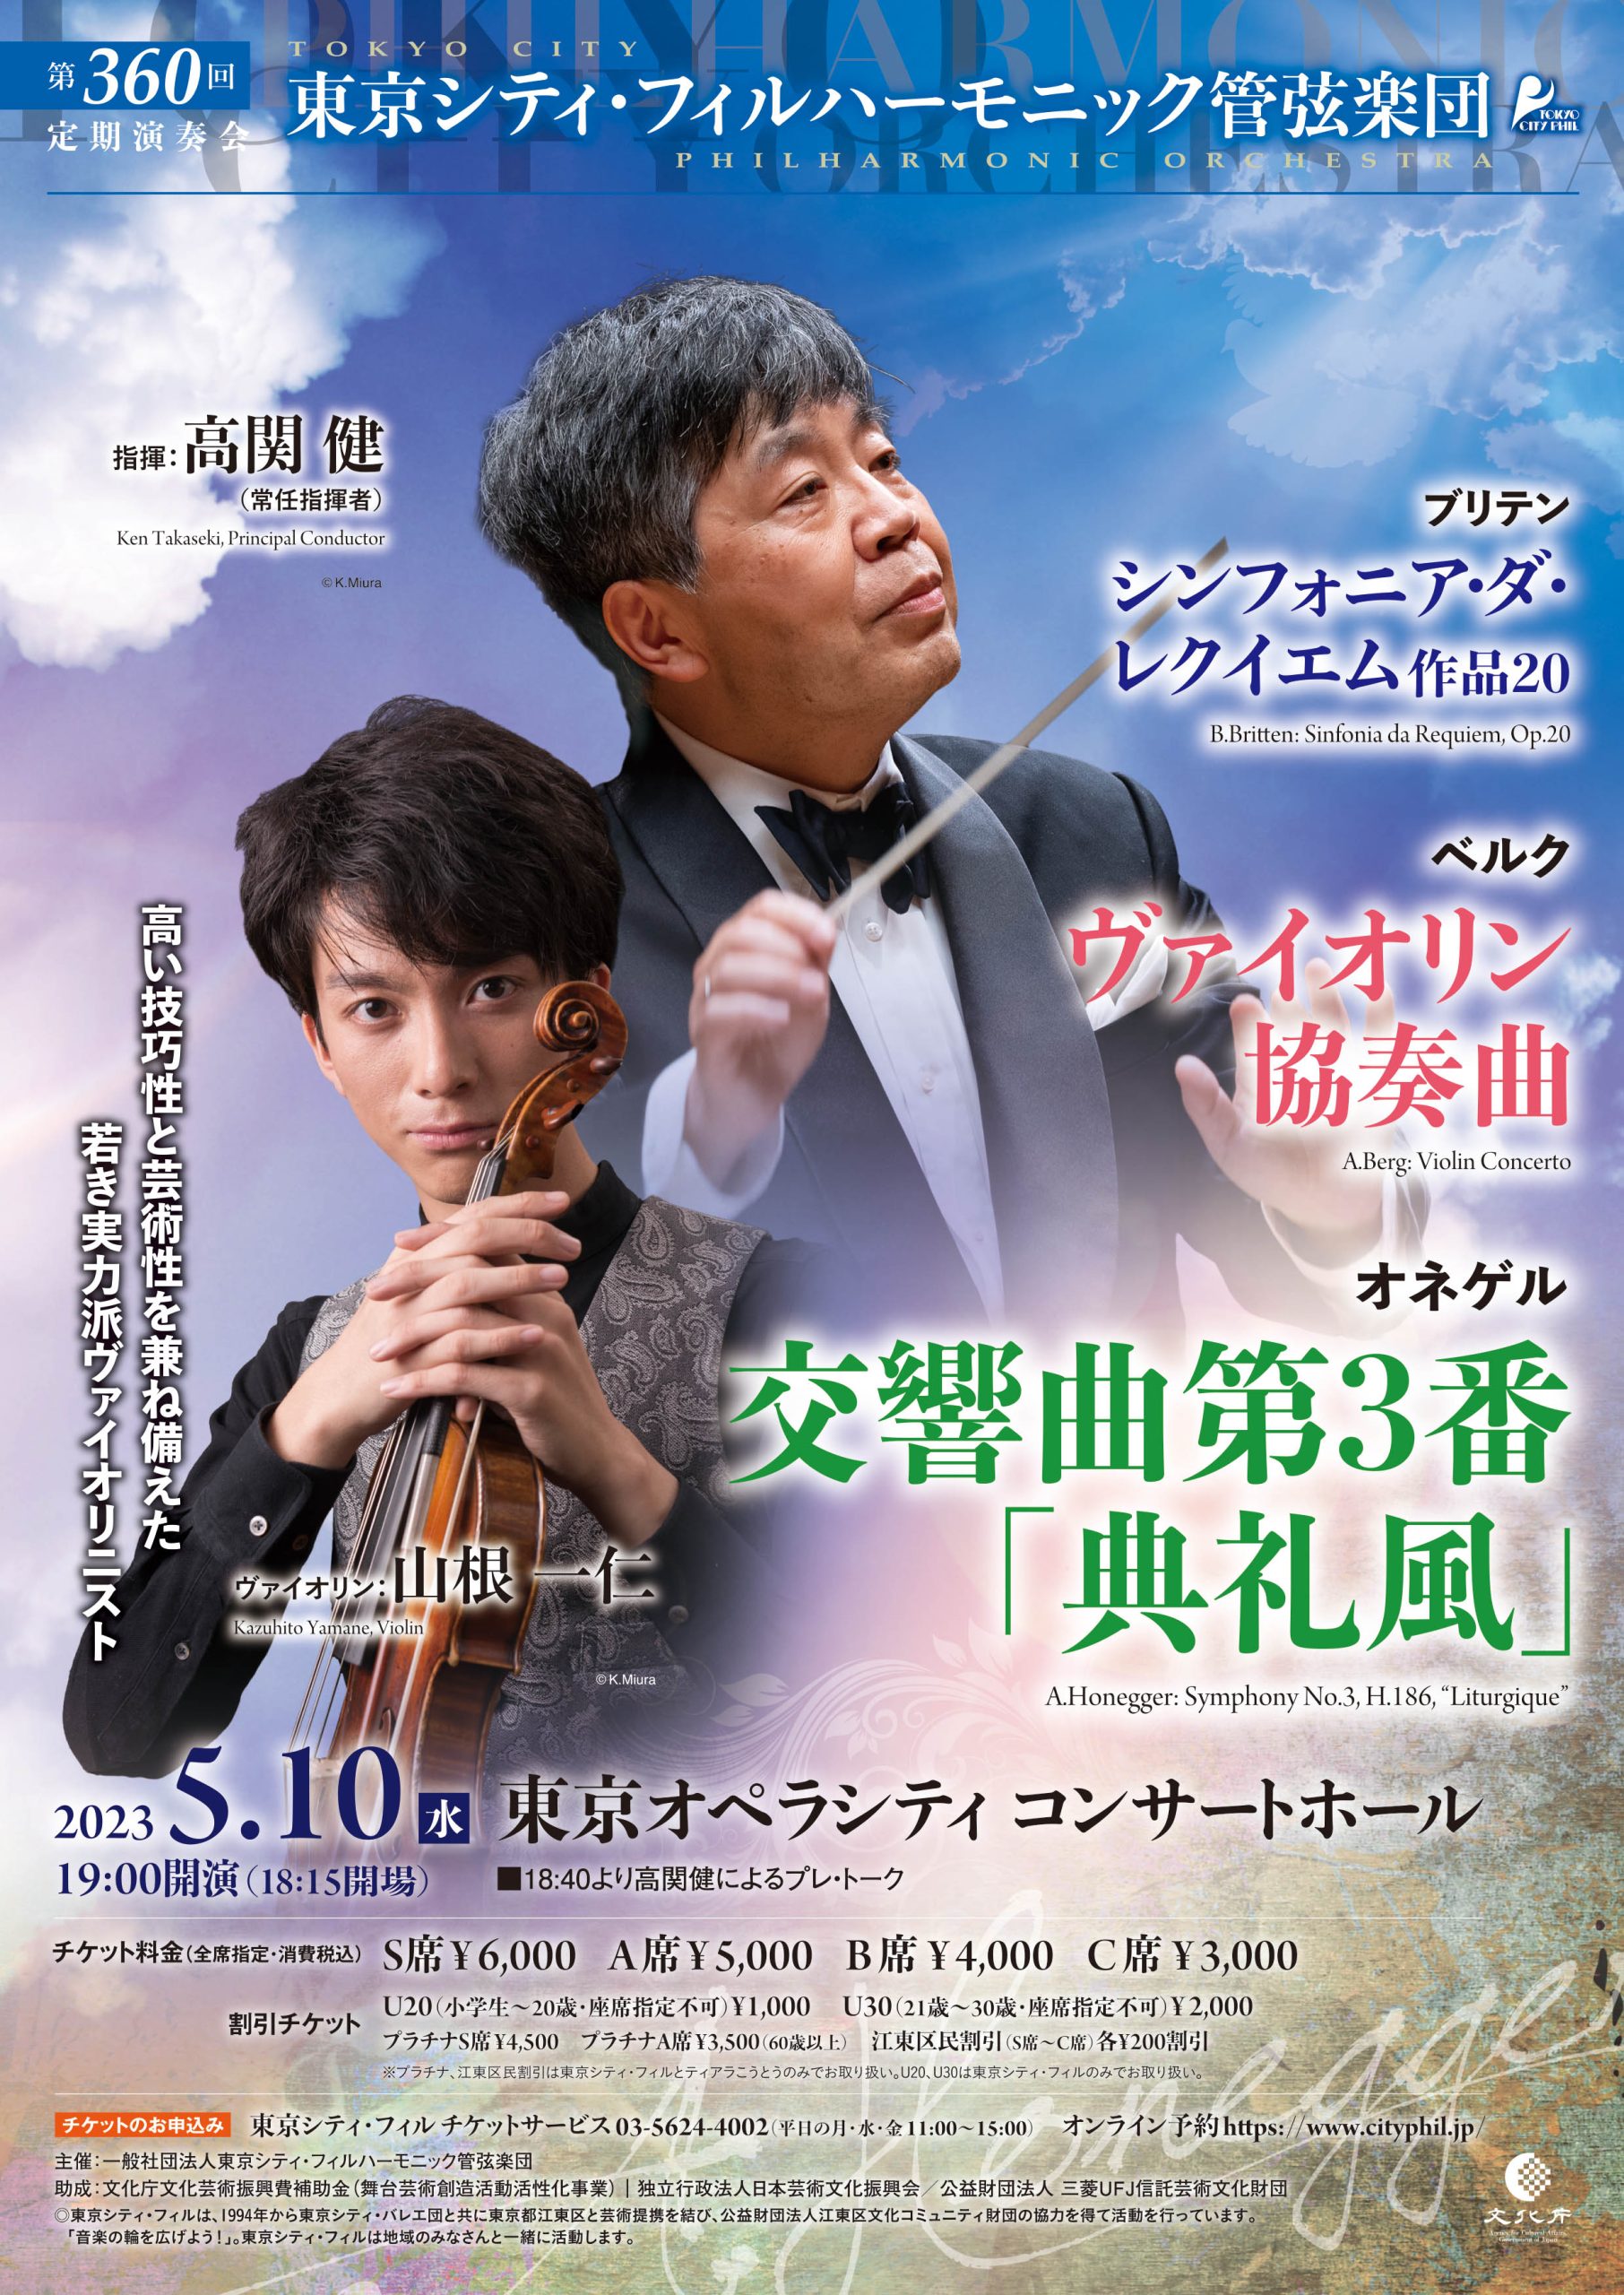 東京シティ・フィルハーモニック管弦楽団 に関連する公演記録一覧